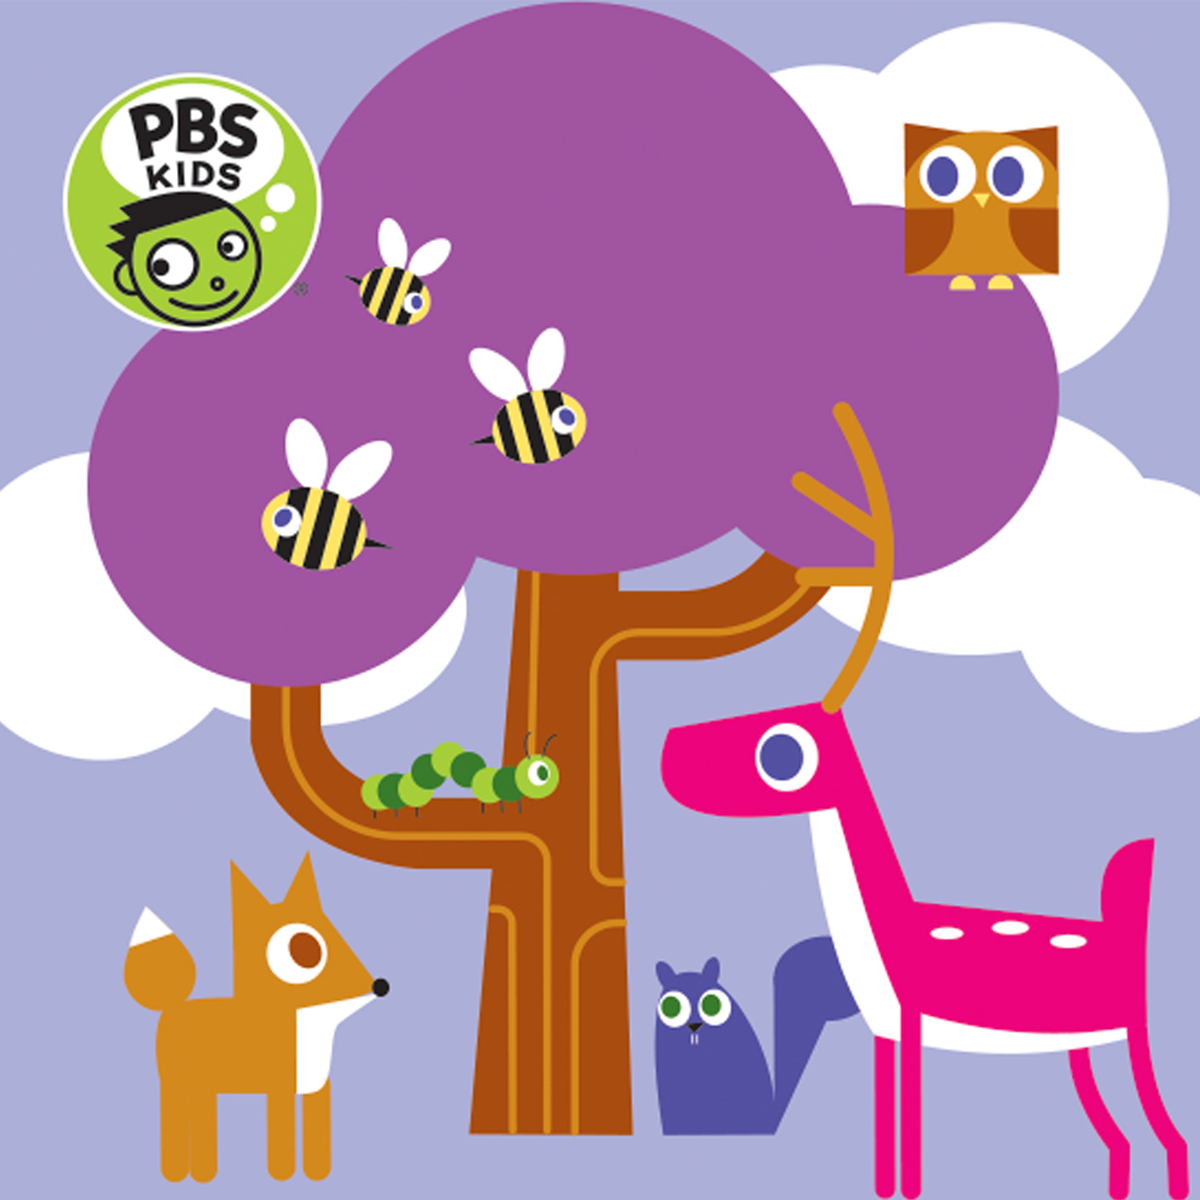 PBS KIDS "WOODLAND FRIENDS" KINDERMAT SHEETS